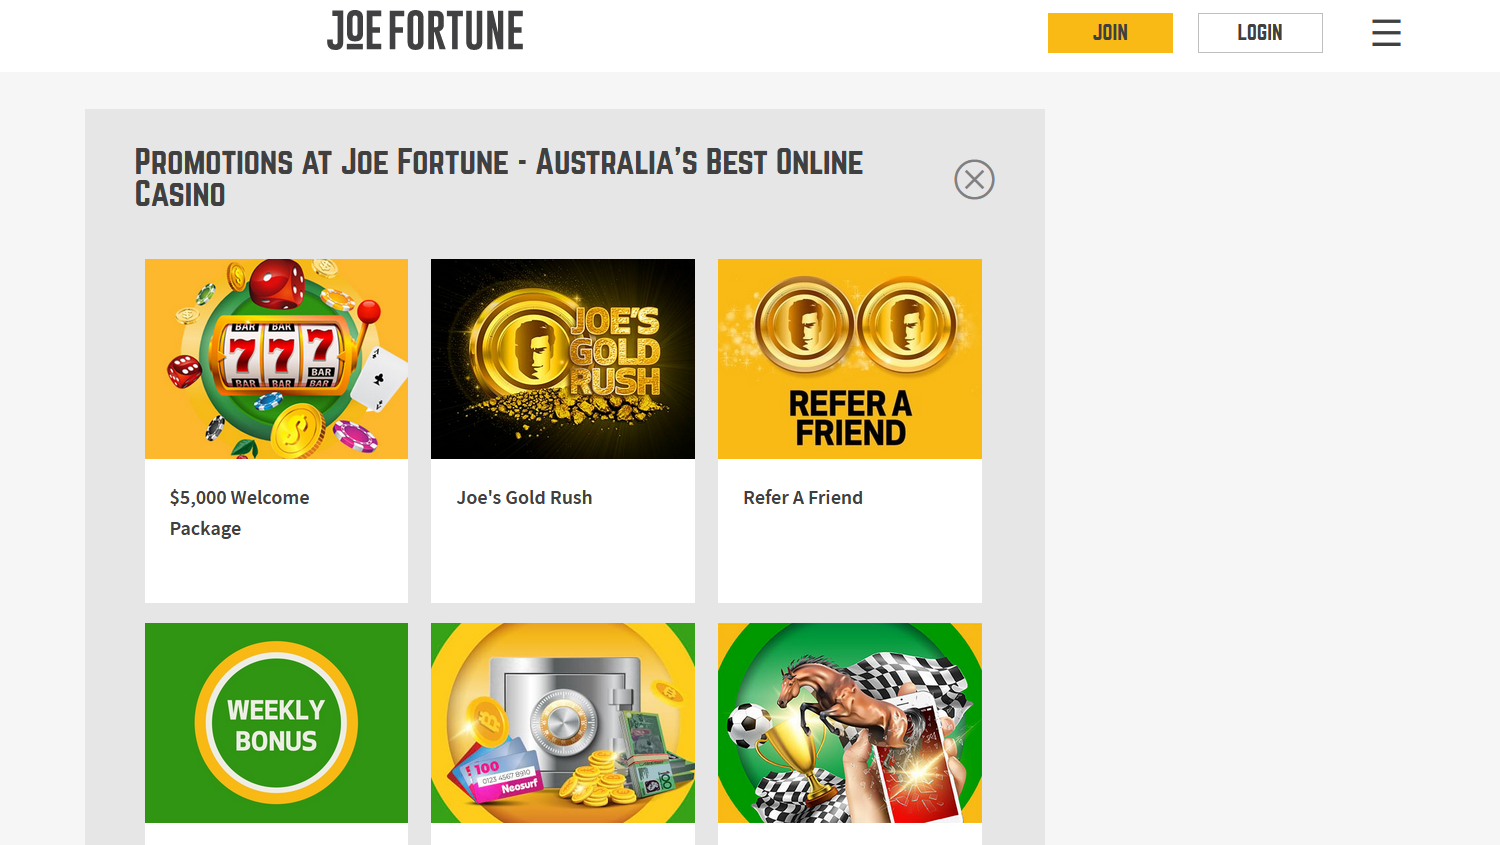 Joe Fortune casino screenshot of bonuses